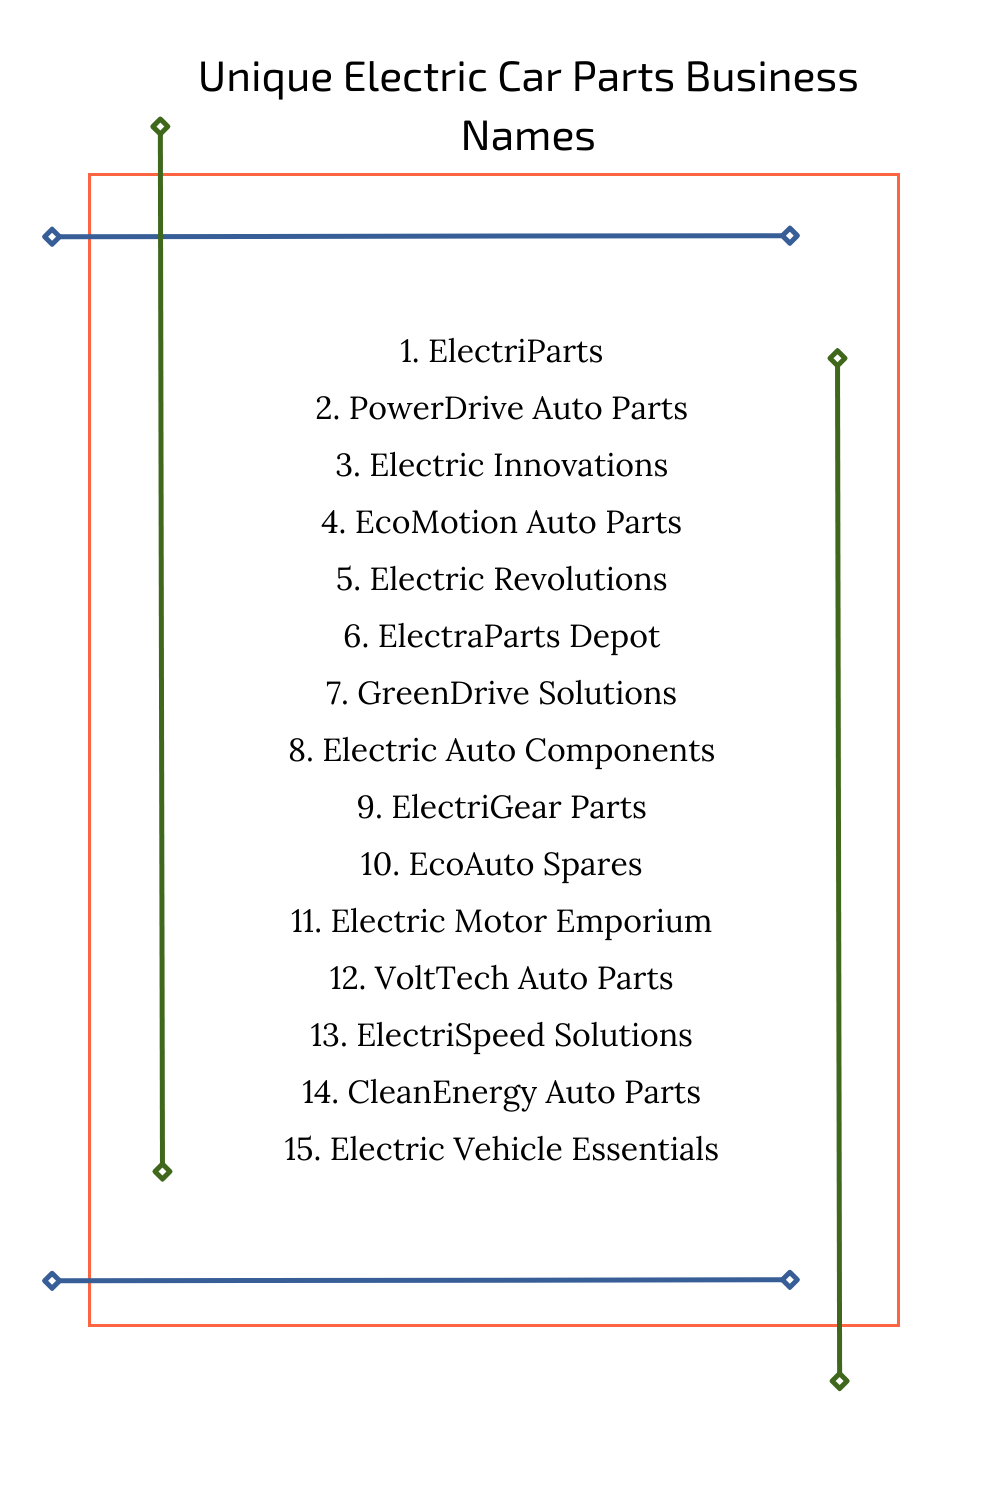 Unique Electric Car Parts Business Names